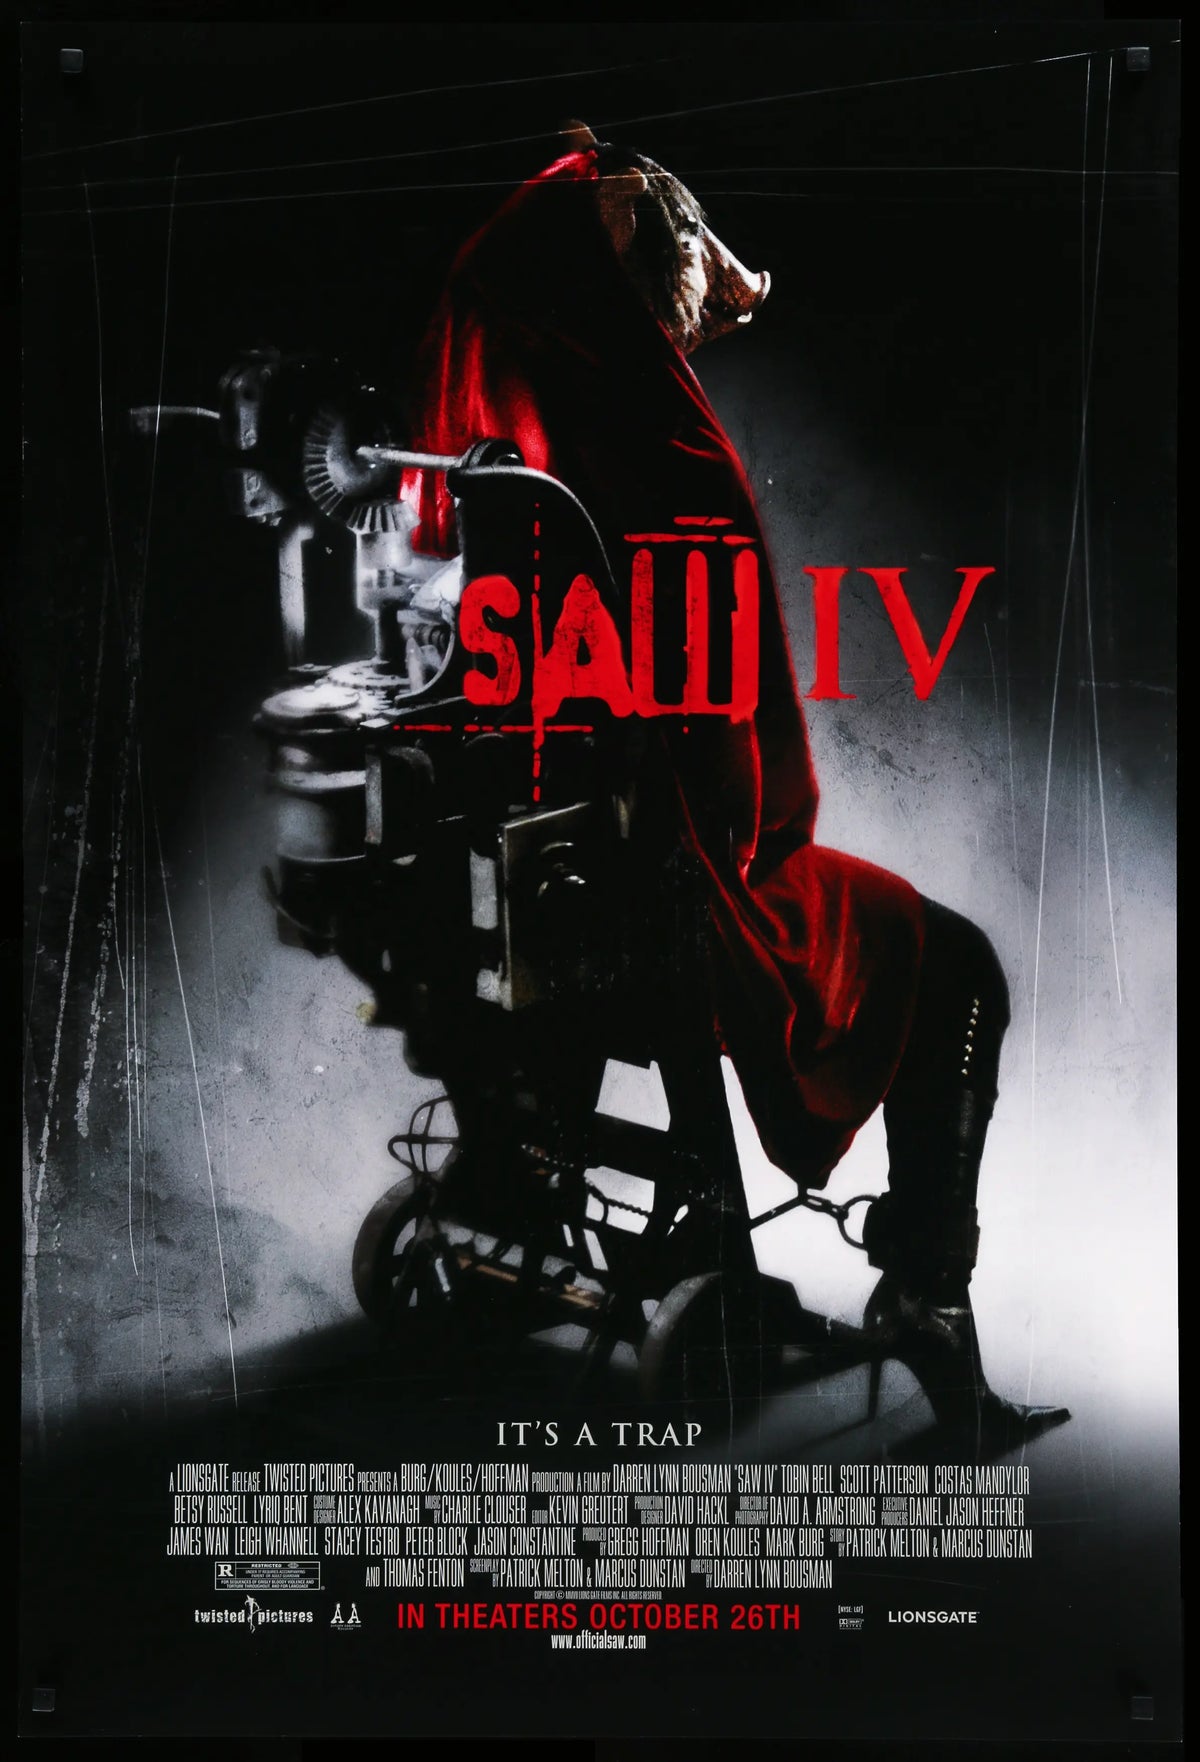 Saw IV (2007) original movie poster for sale at Original Film Art